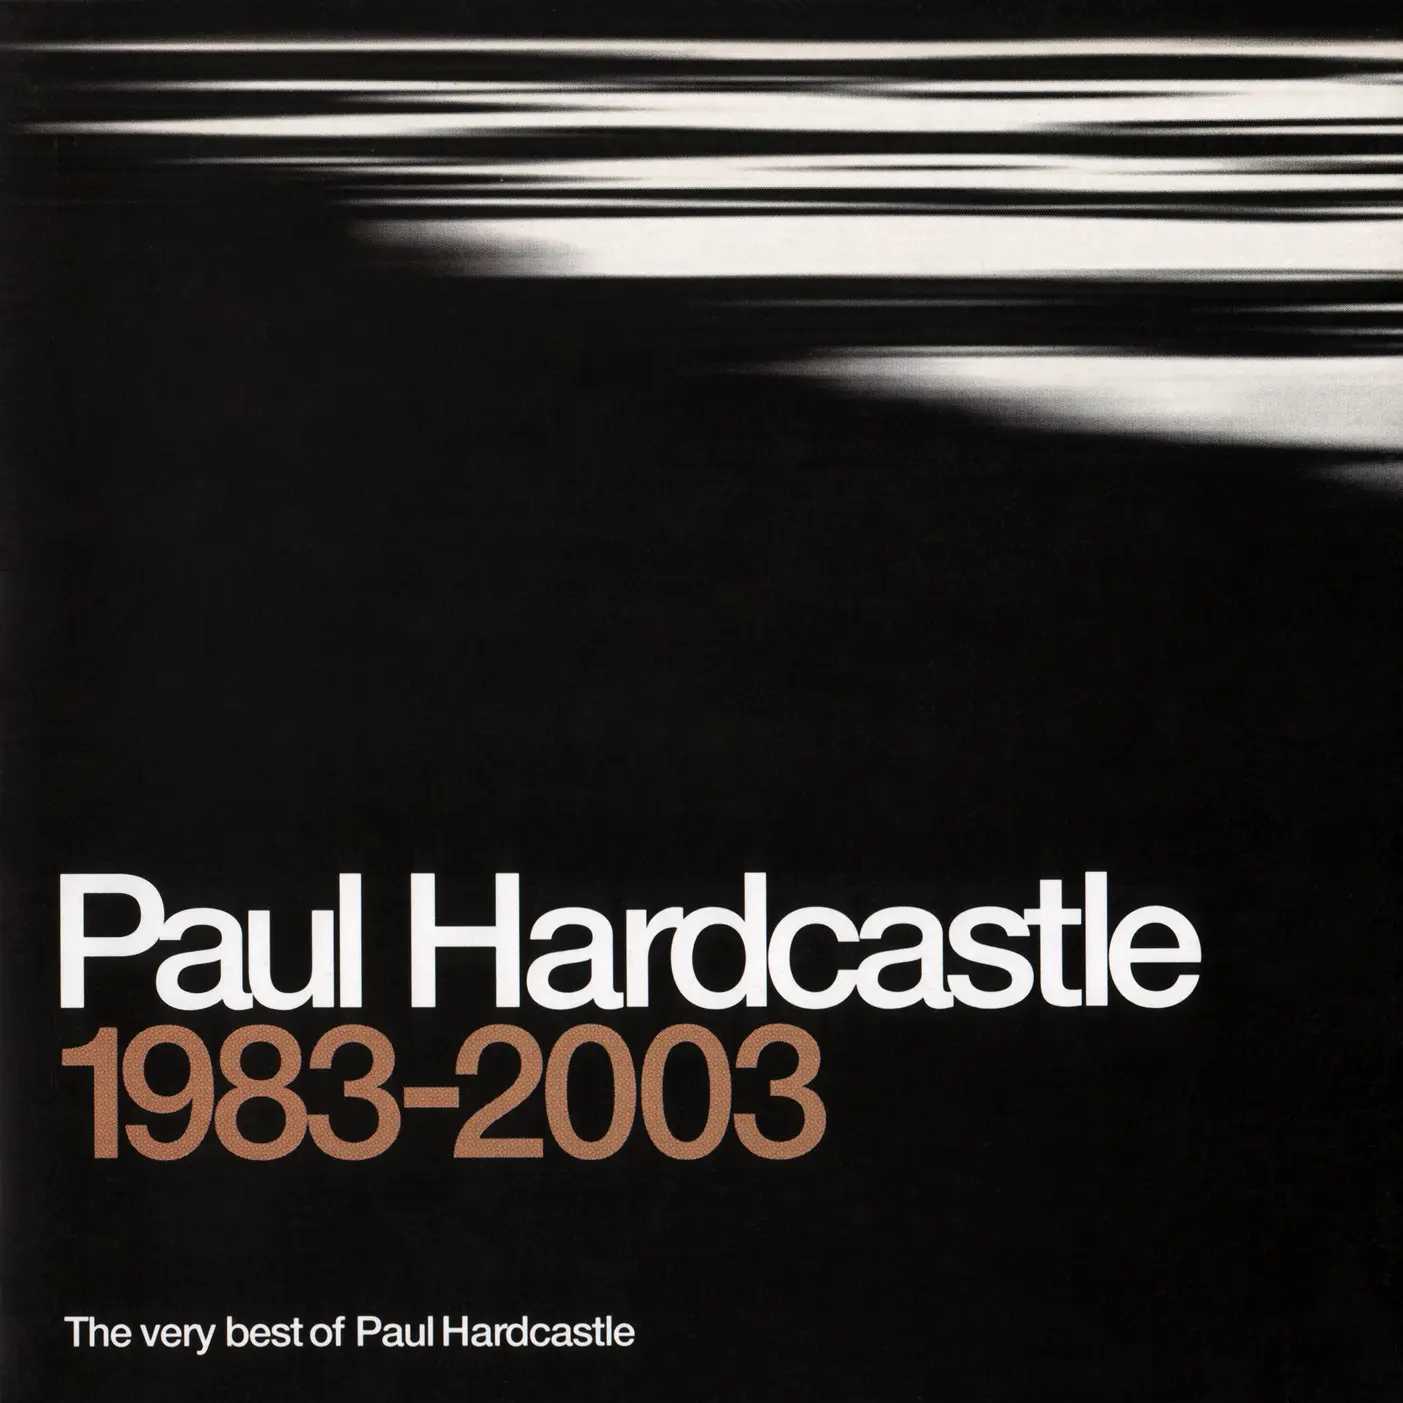 Paul hardcastle. The very best of Paul Hardcastle 1983–2003. Paul Hardcastle 19. The very best of Paul Hardcastle. Paul Hardcastle фото.